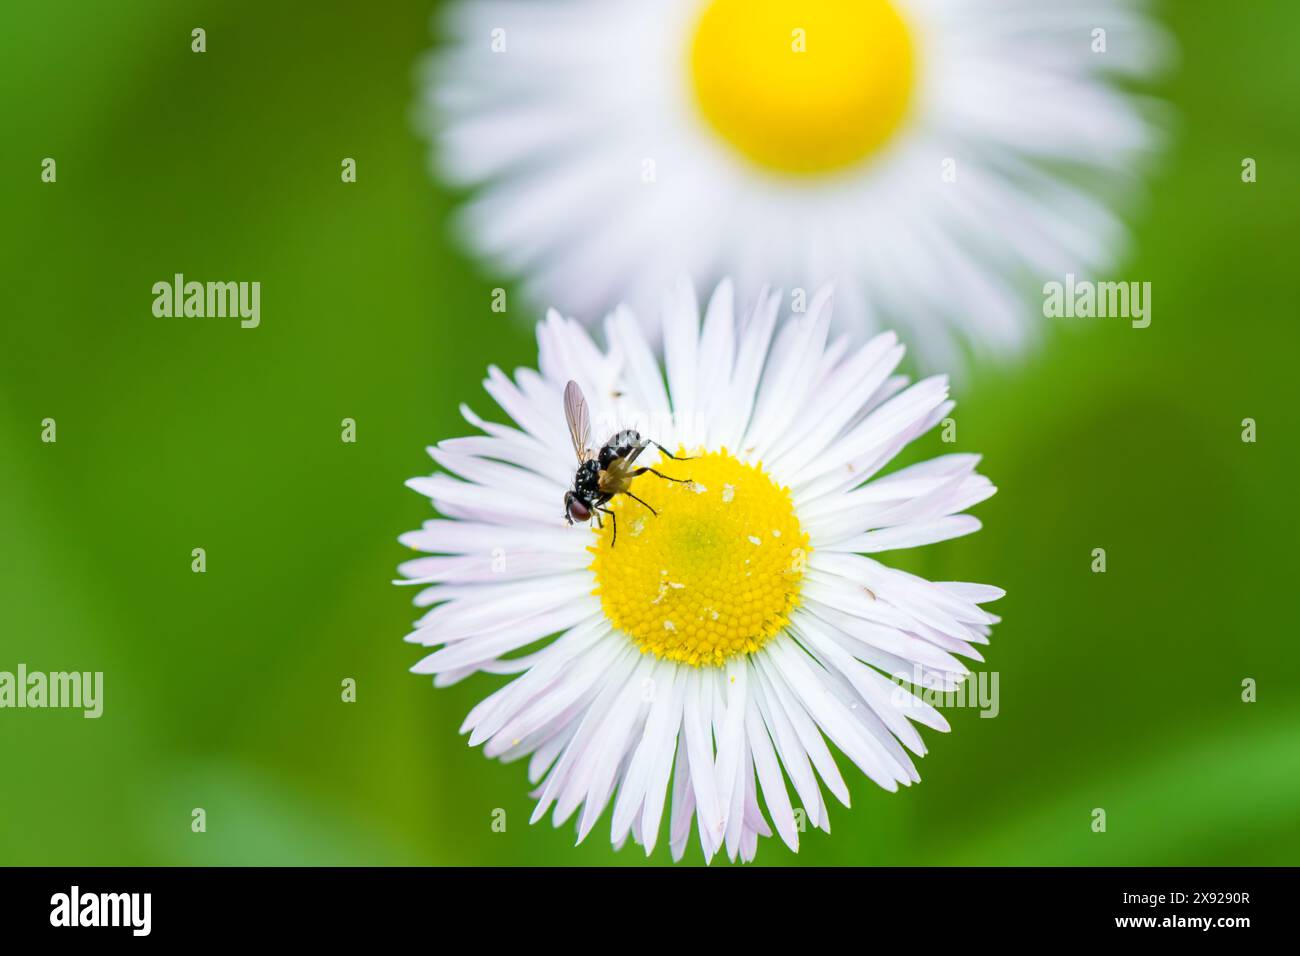 Une petite mouche se perche délicatement sur une fleur blanche au centre jaune vif, entourée de délicats pétales. La scène présente un pollinisateur int Banque D'Images